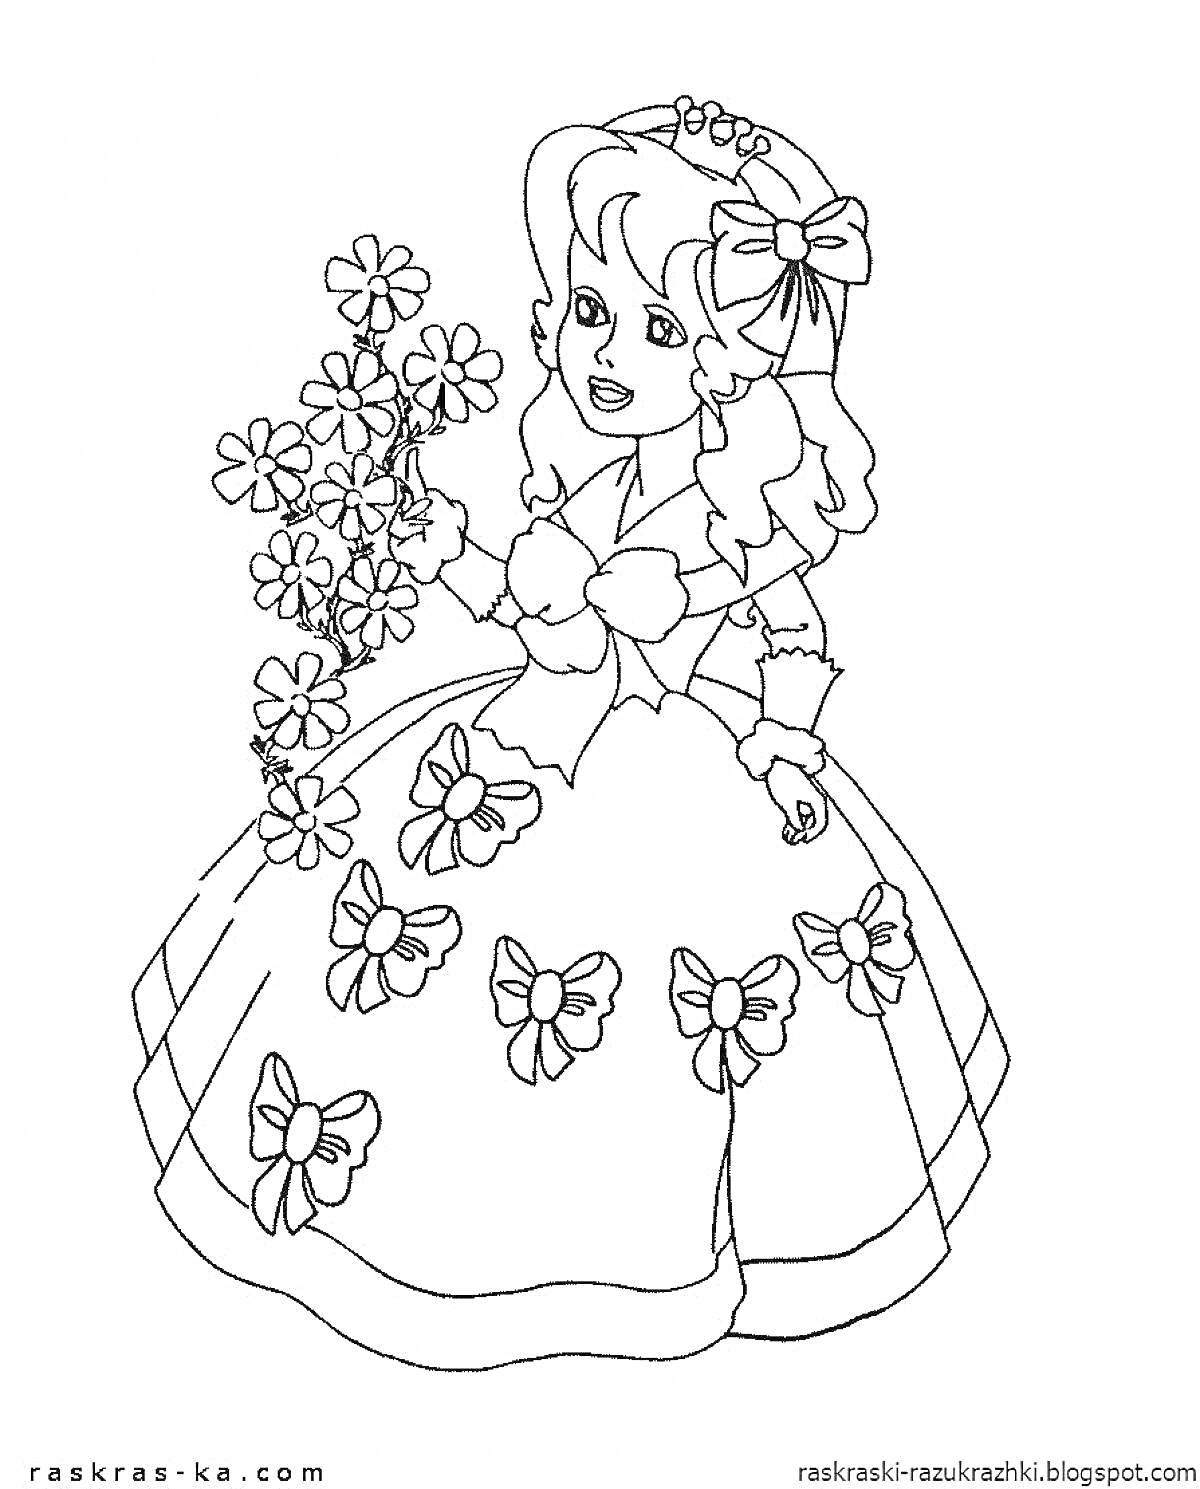 Раскраска Девочка в длинном платье с цветами в руке и бантами на платье